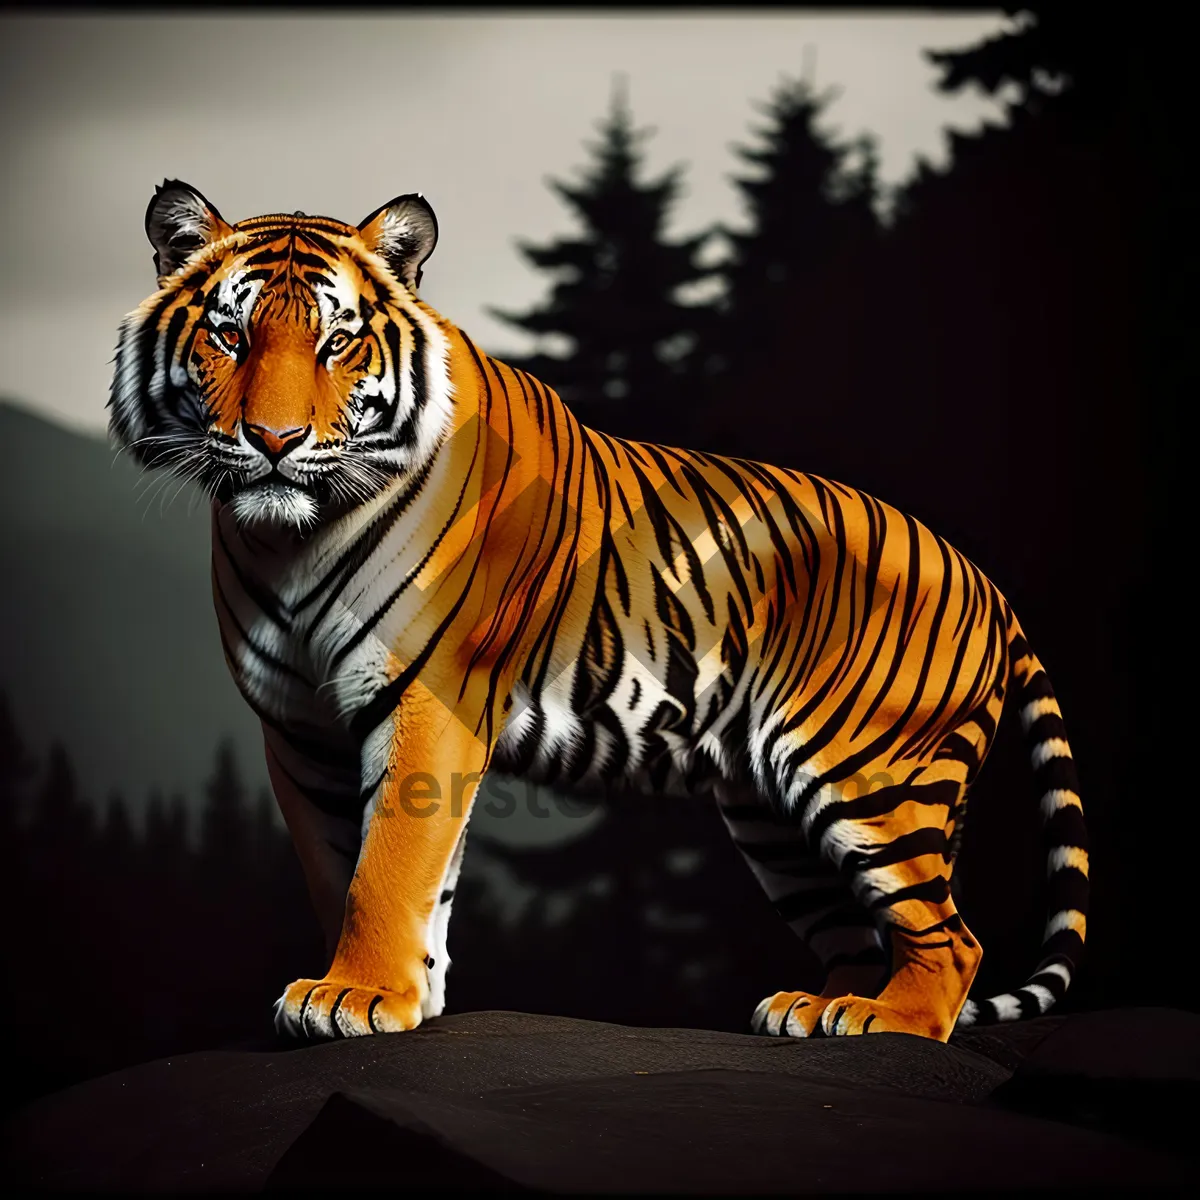 Picture of Striped Jungle Predator: Majestic Tiger in the Wild